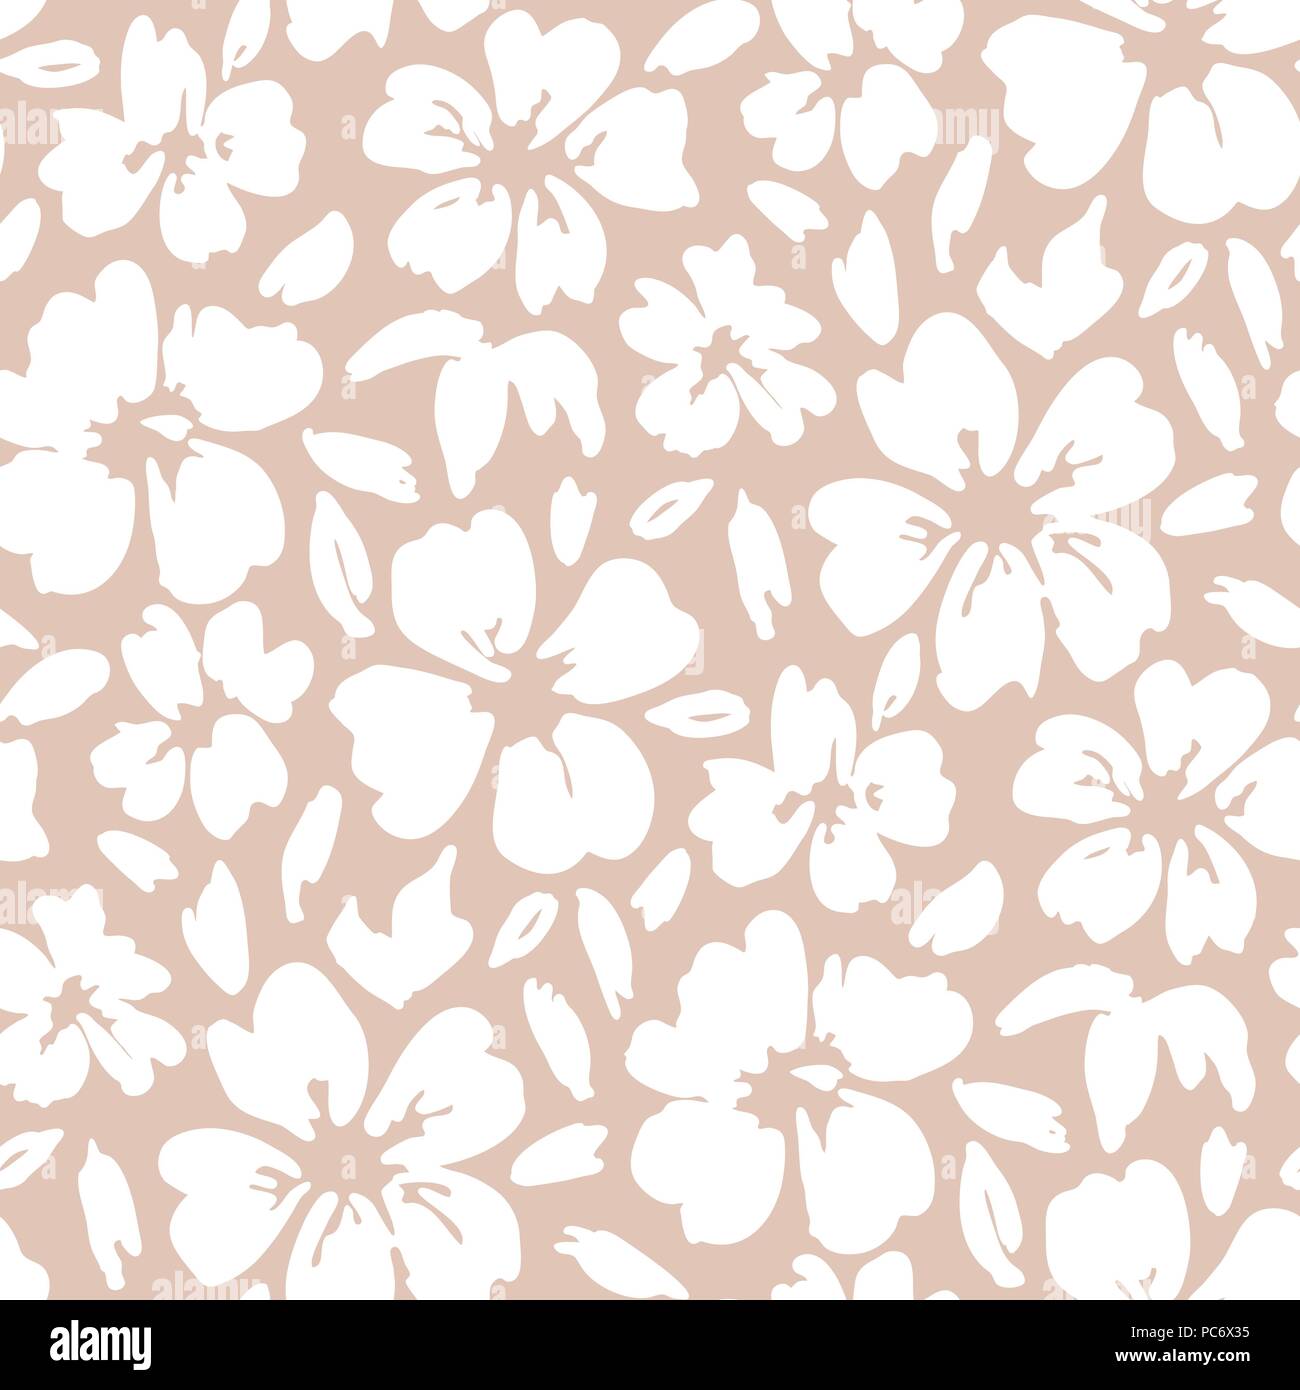 Fett Grafik großen floralen Vektor nahtlose Muster. Einfache weiße Hand Blumen auf rosa Hintergrund gezeichnet. Monochrome Blüten und Blätter drucken. Stock Vektor